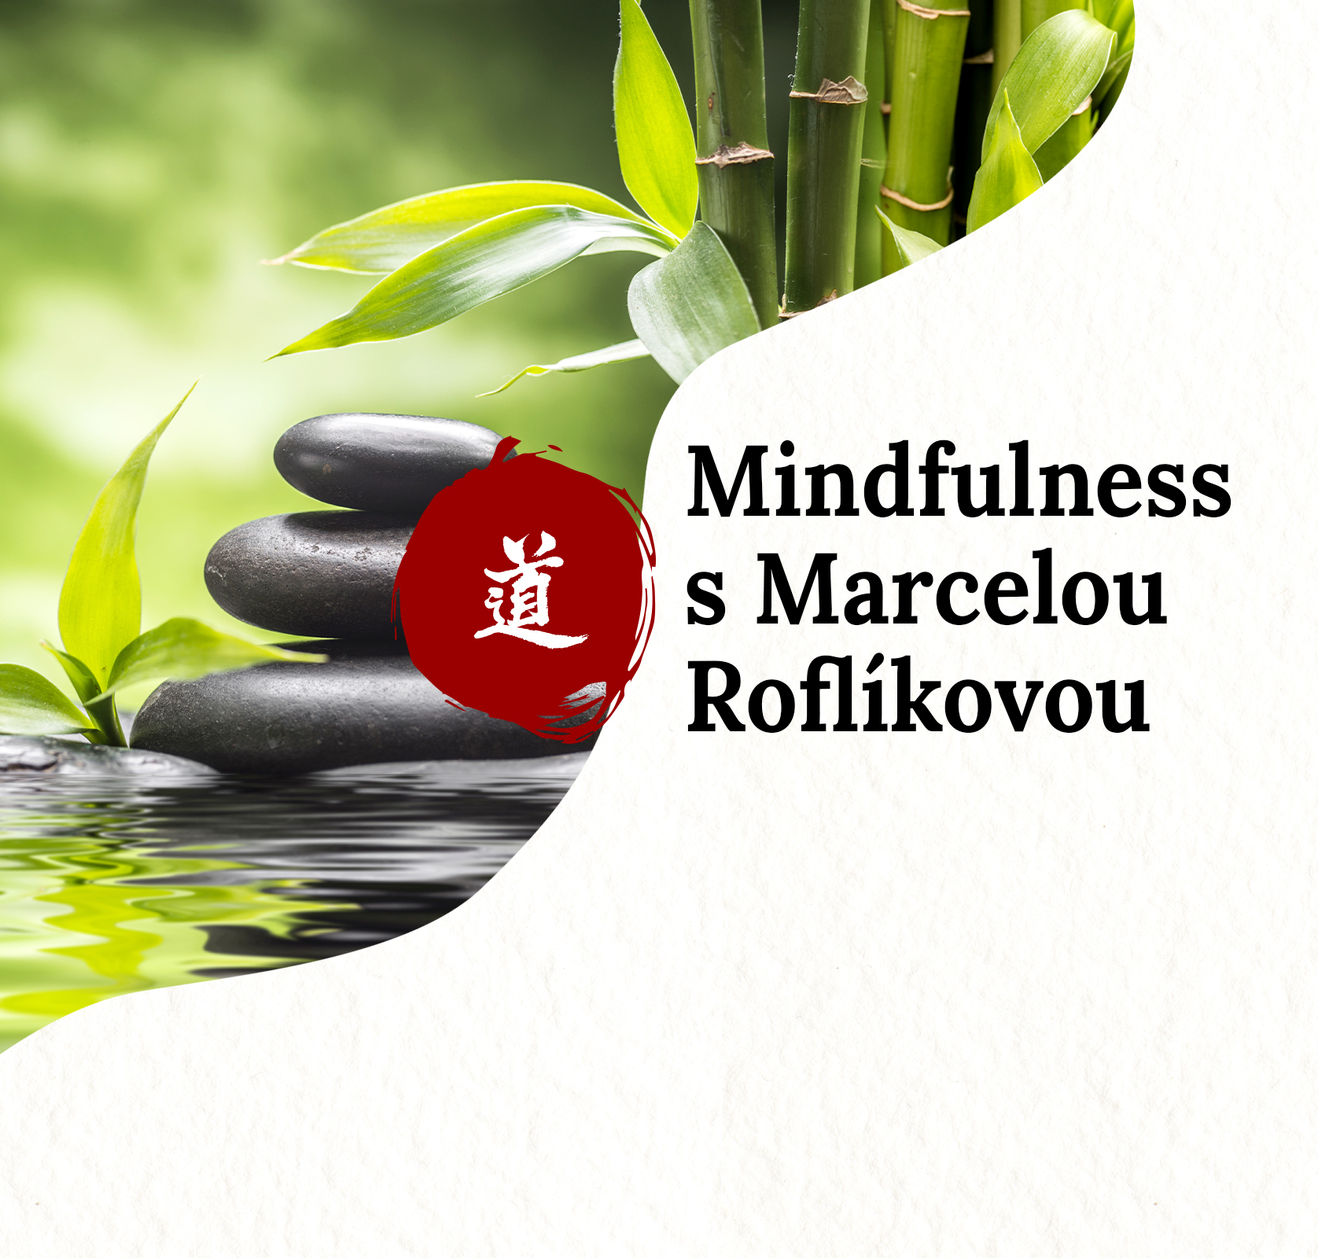 Mindfulness - zvládání náročných situací